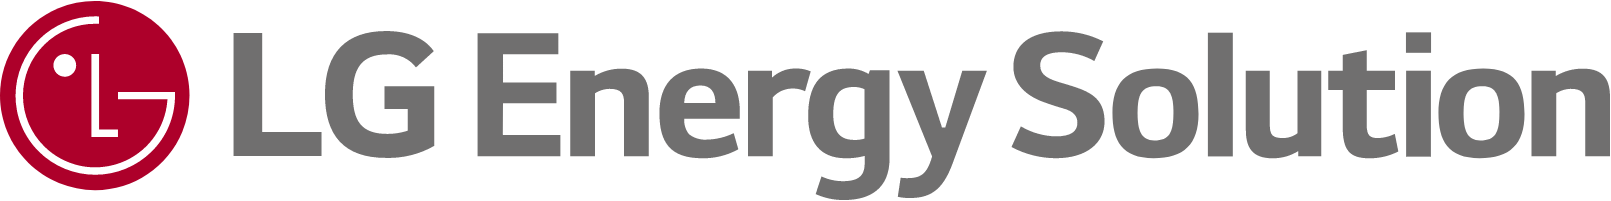 LG Energy Solution logo large (transparent PNG)